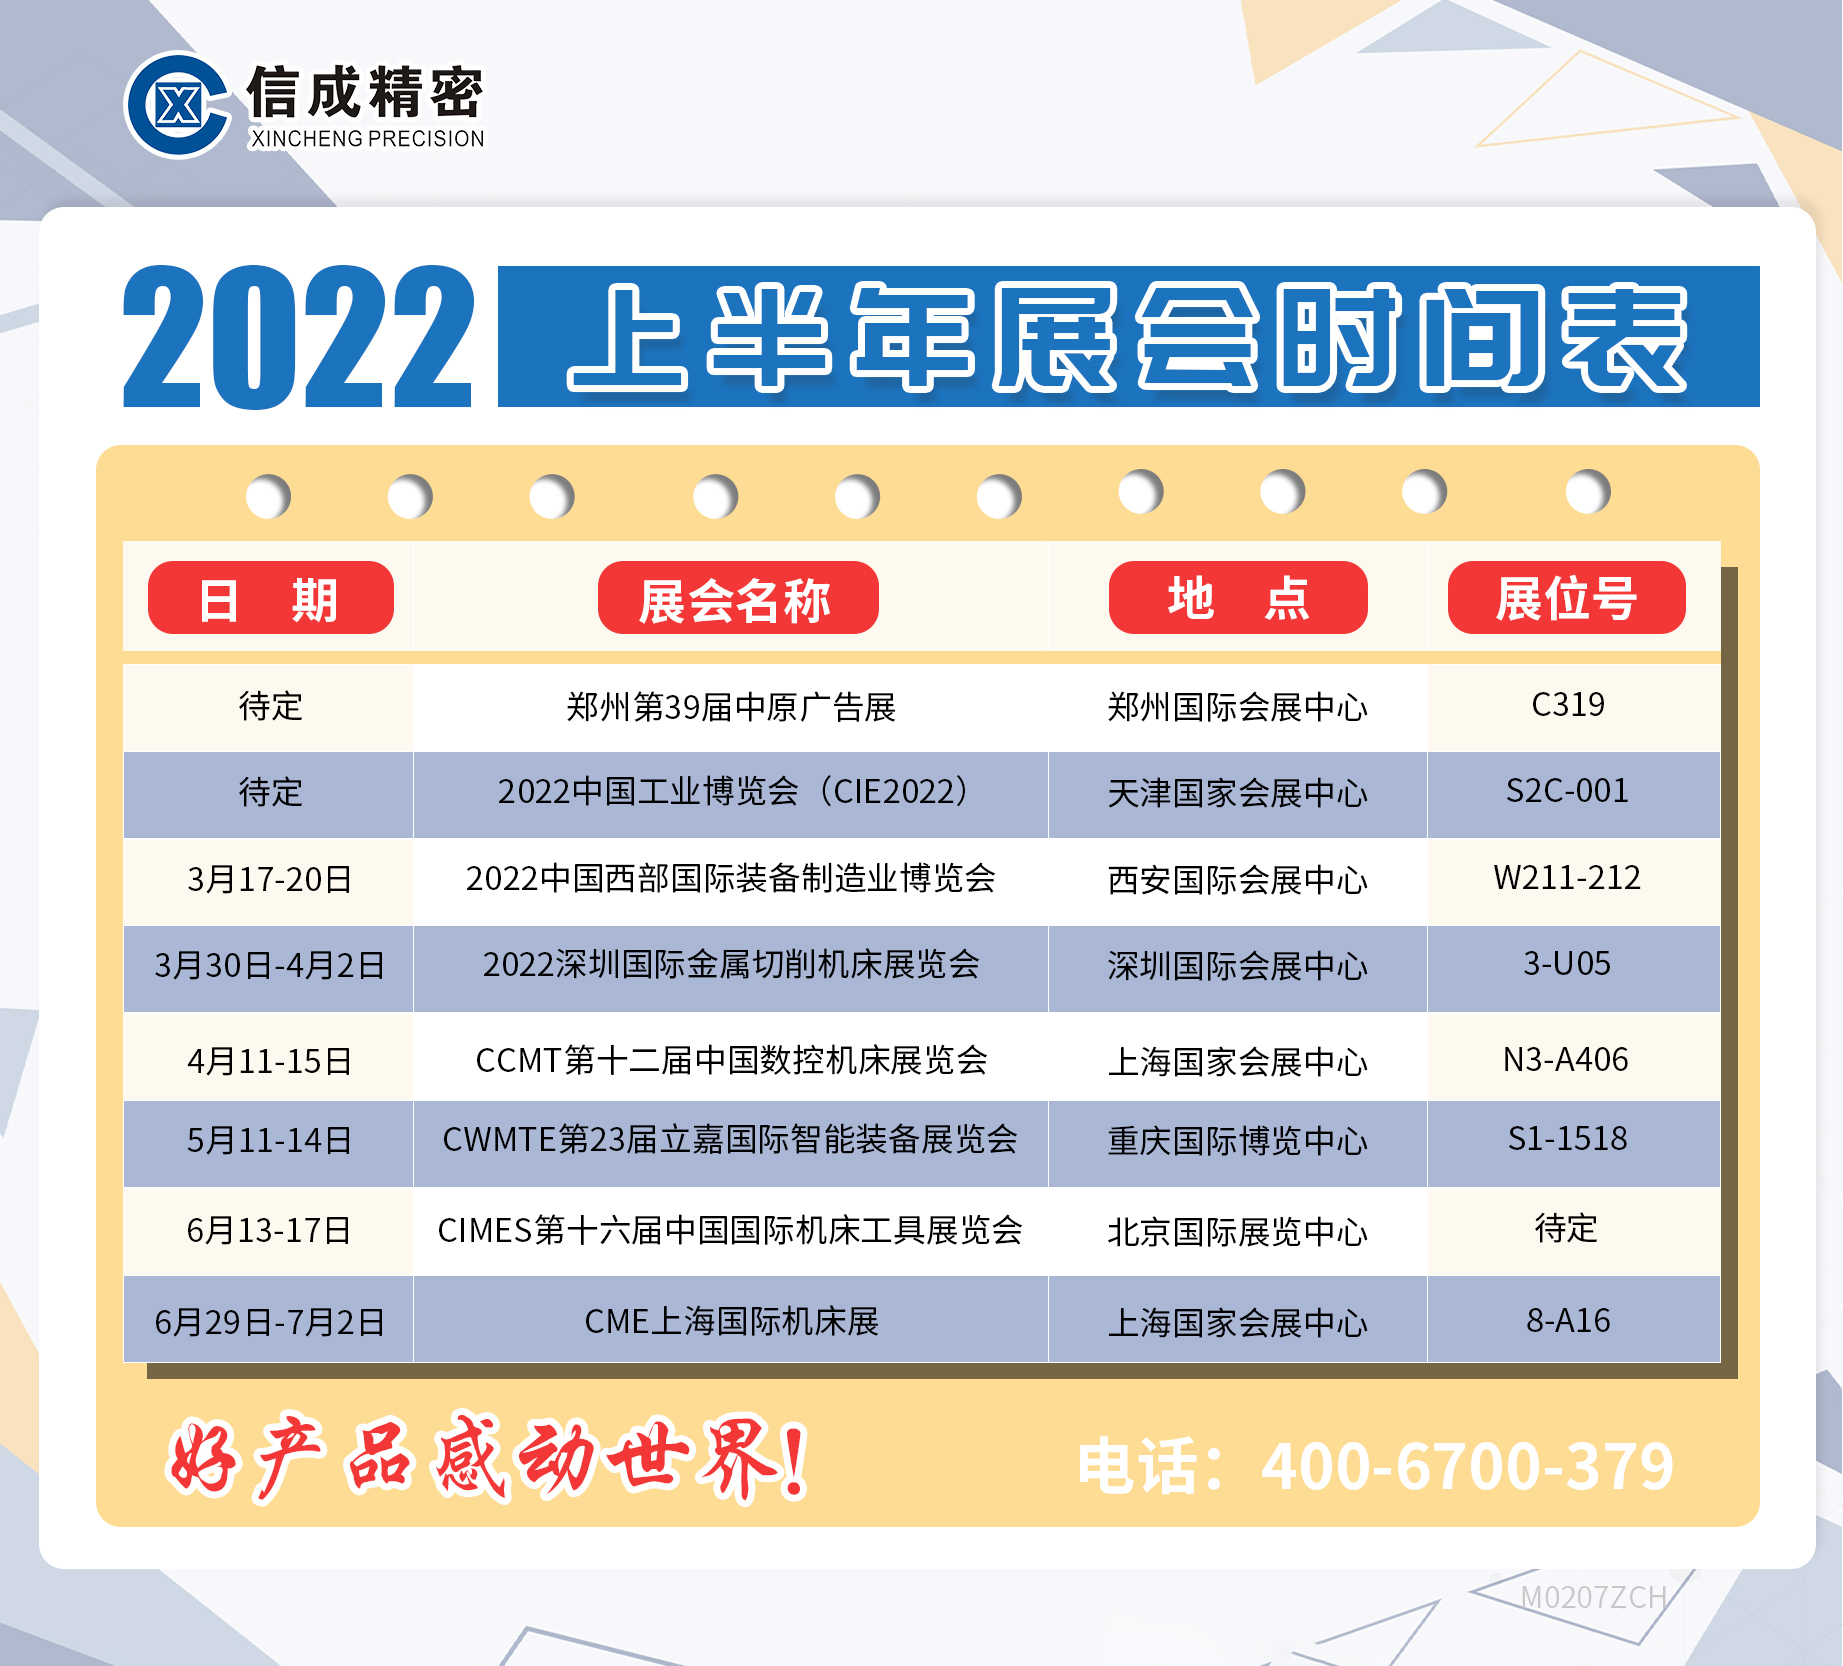 【整理】2022展会时间表更新M0207张晓燕.jpg